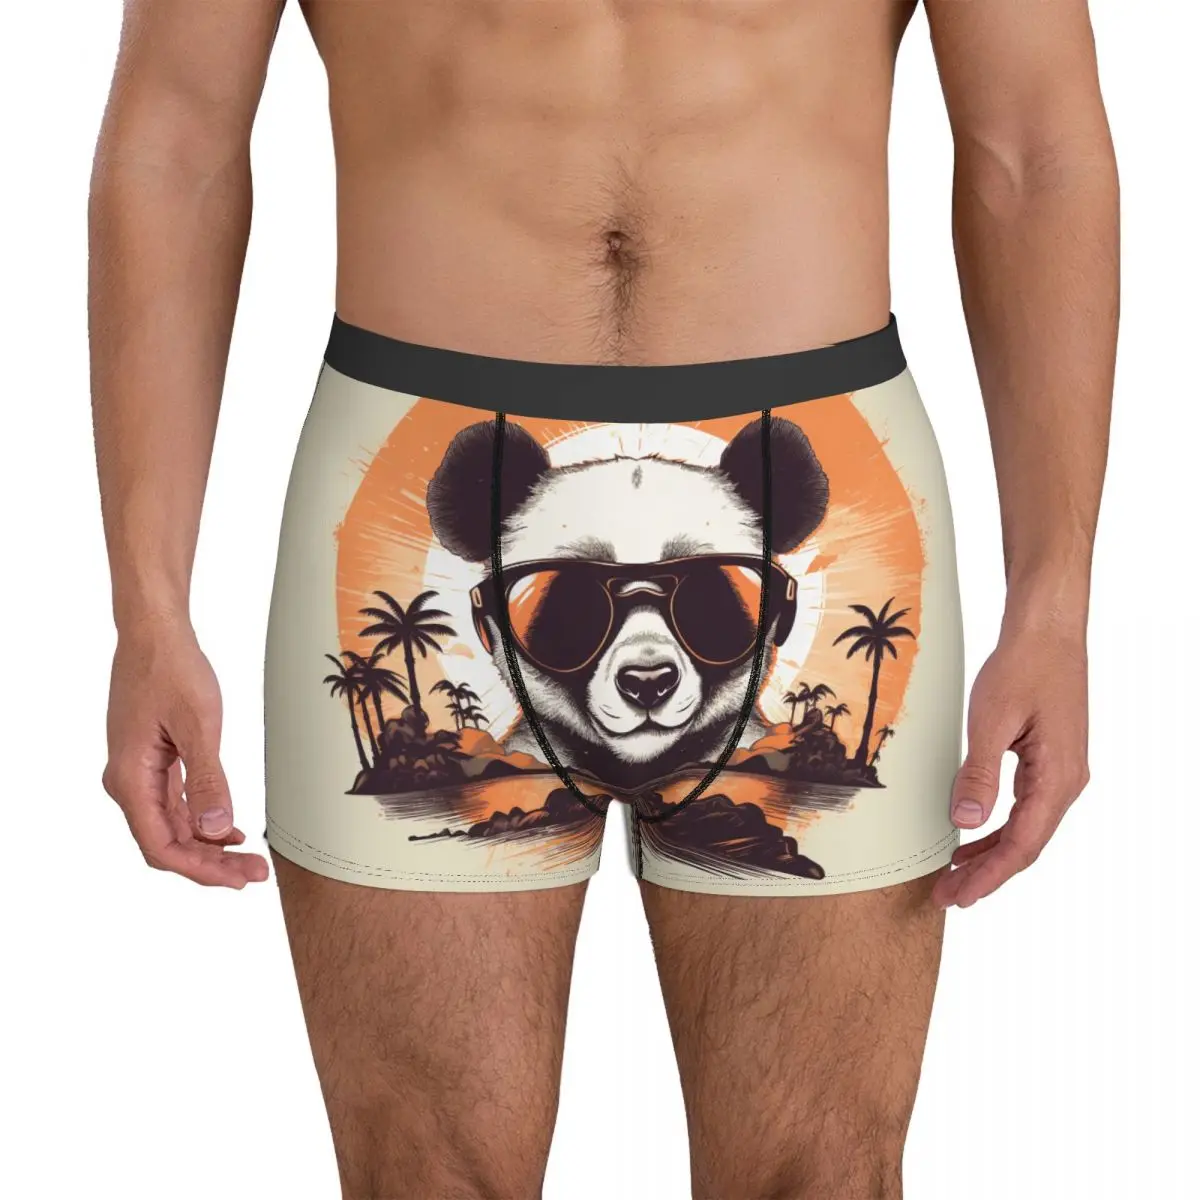 

Нижнее белье панда закат животные с солнцезащитными очками мужские трусы в стиле ретро обычные шорты-боксеры тренировочные шорты брифы размера плюс 2XL